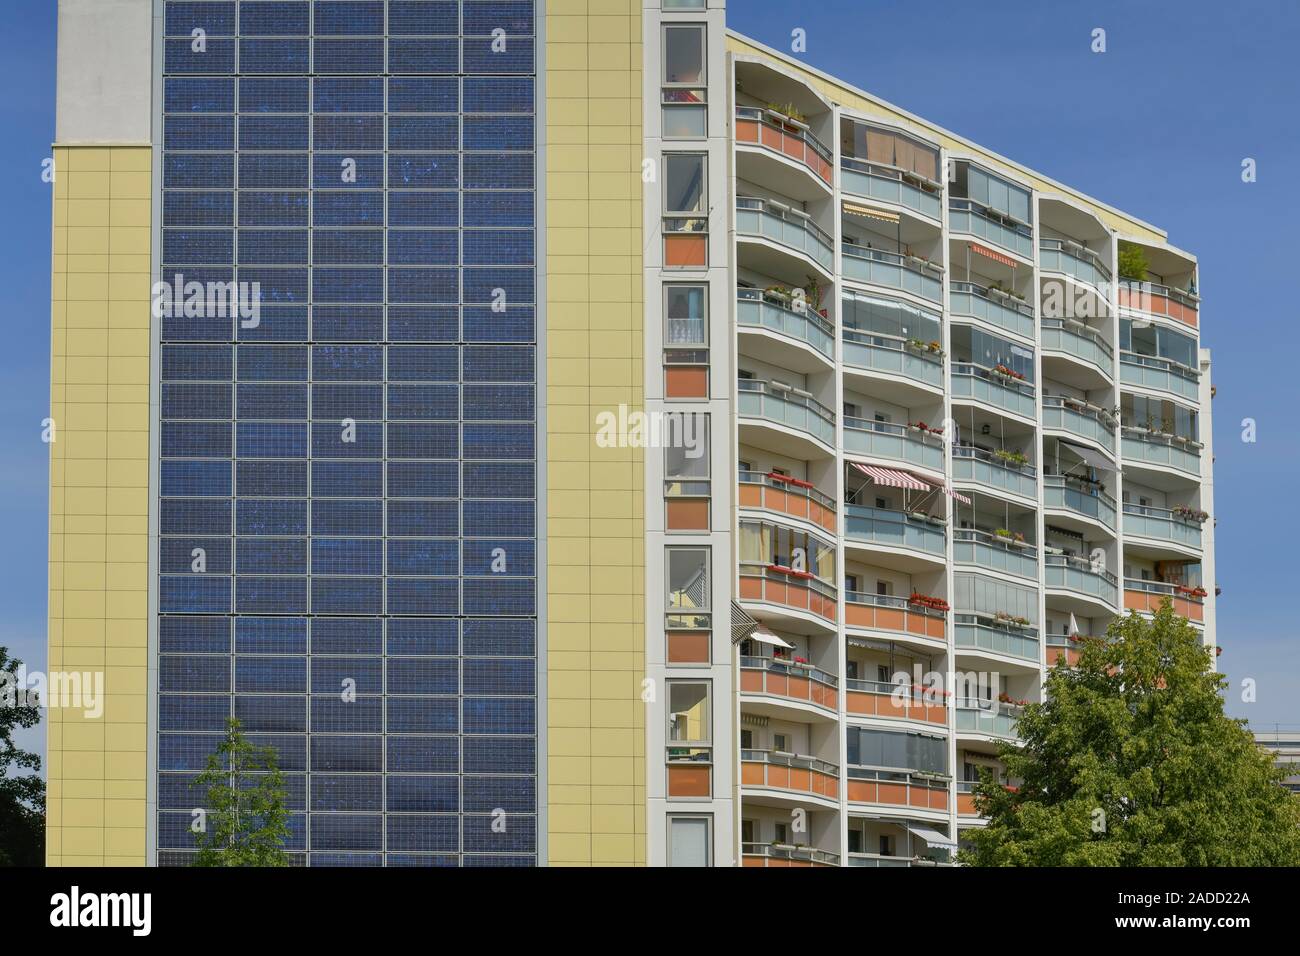 Fotovoltaik-Anlage, Hochhaus, Ludwig-Renn-Straße 35, Marzahn, Berlin, Deutschland Stock Photo